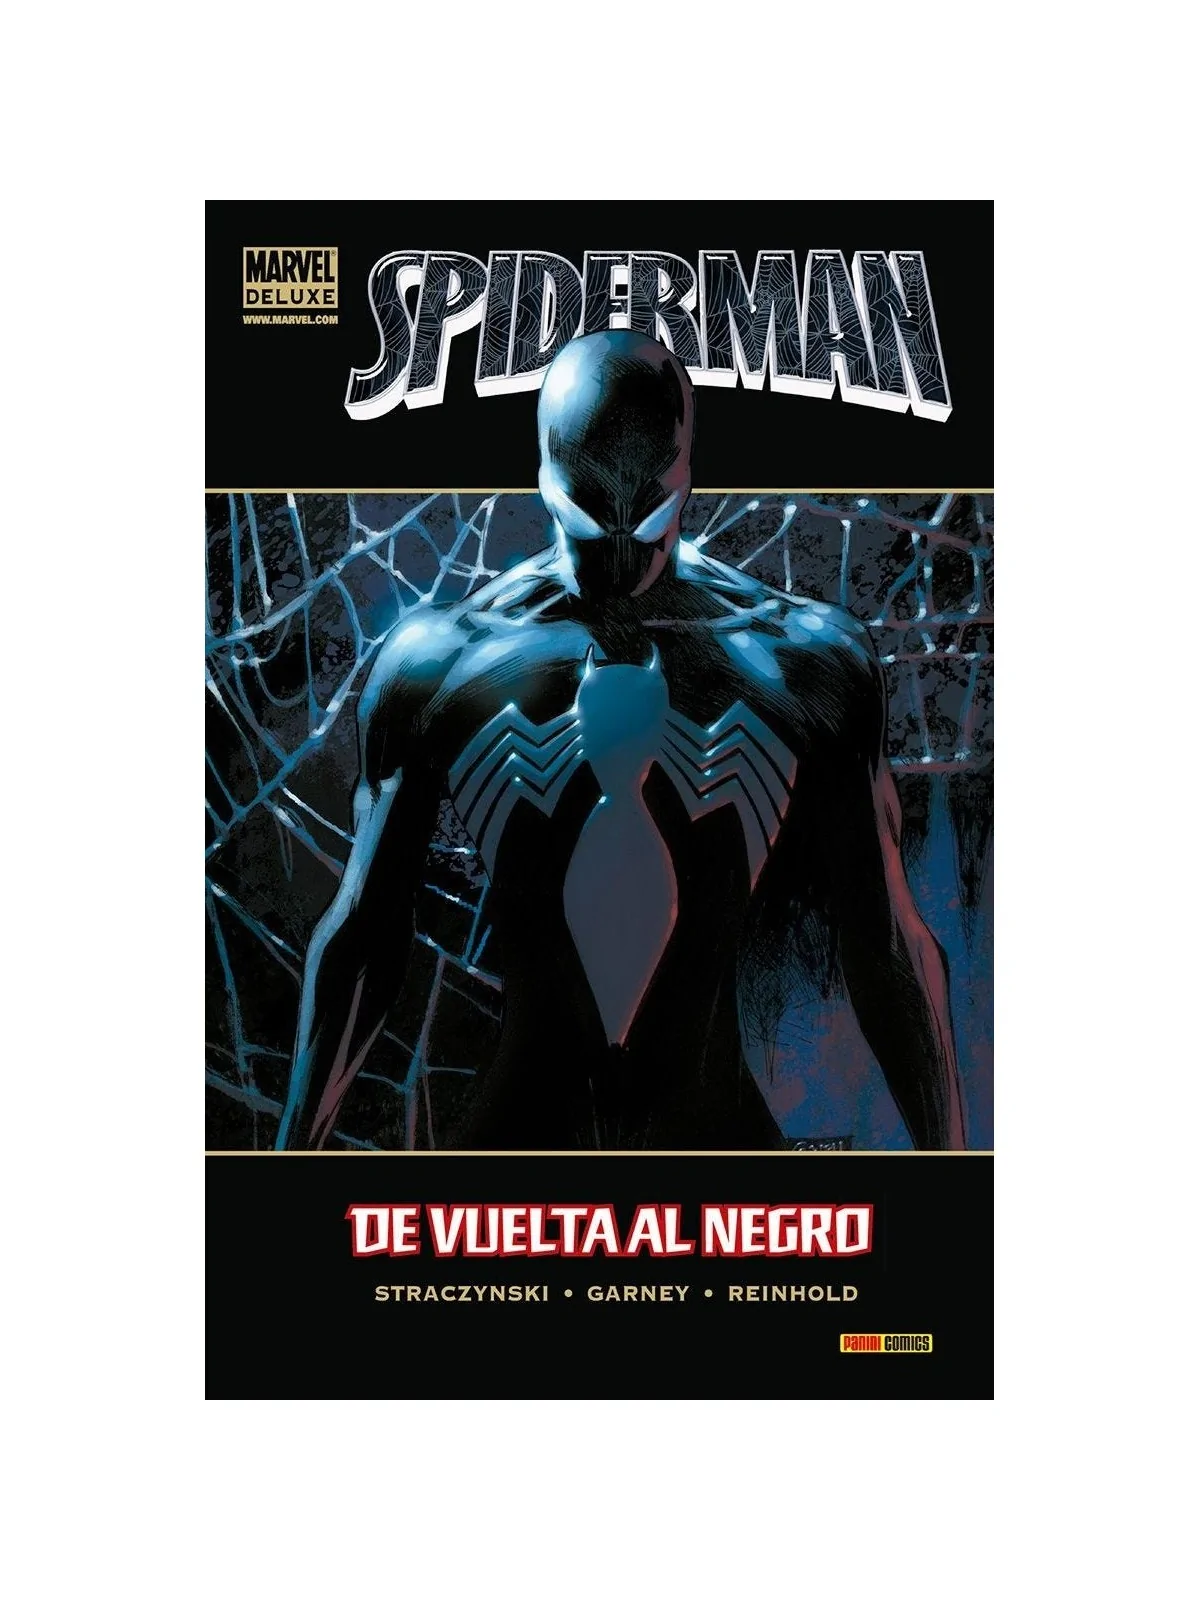 Comprar Spiderman: De Vuelta al Negro barato al mejor precio 19,00 € d